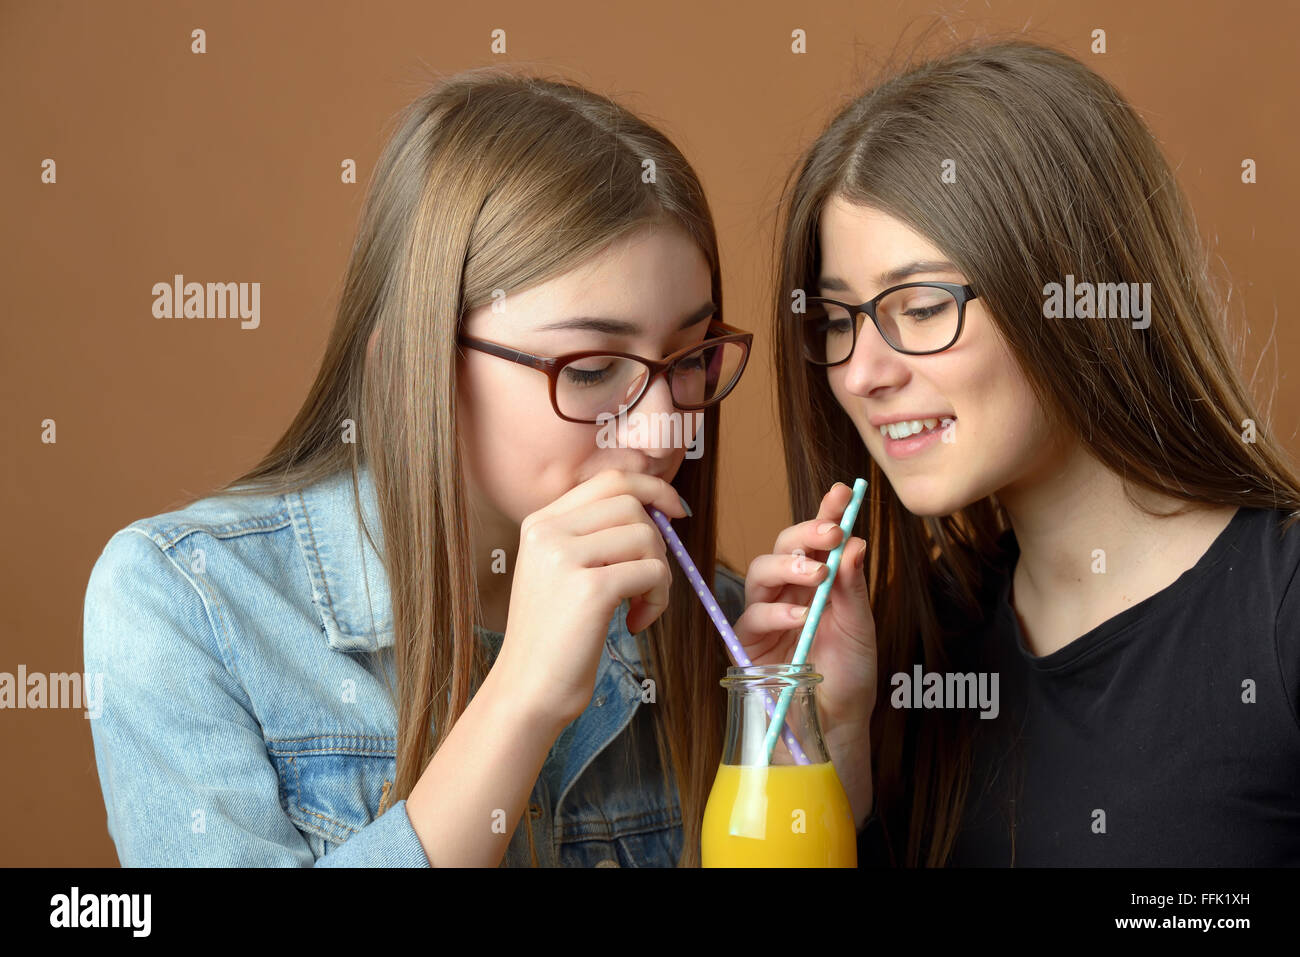 Girls sharing an orange juice drink Stock Photo